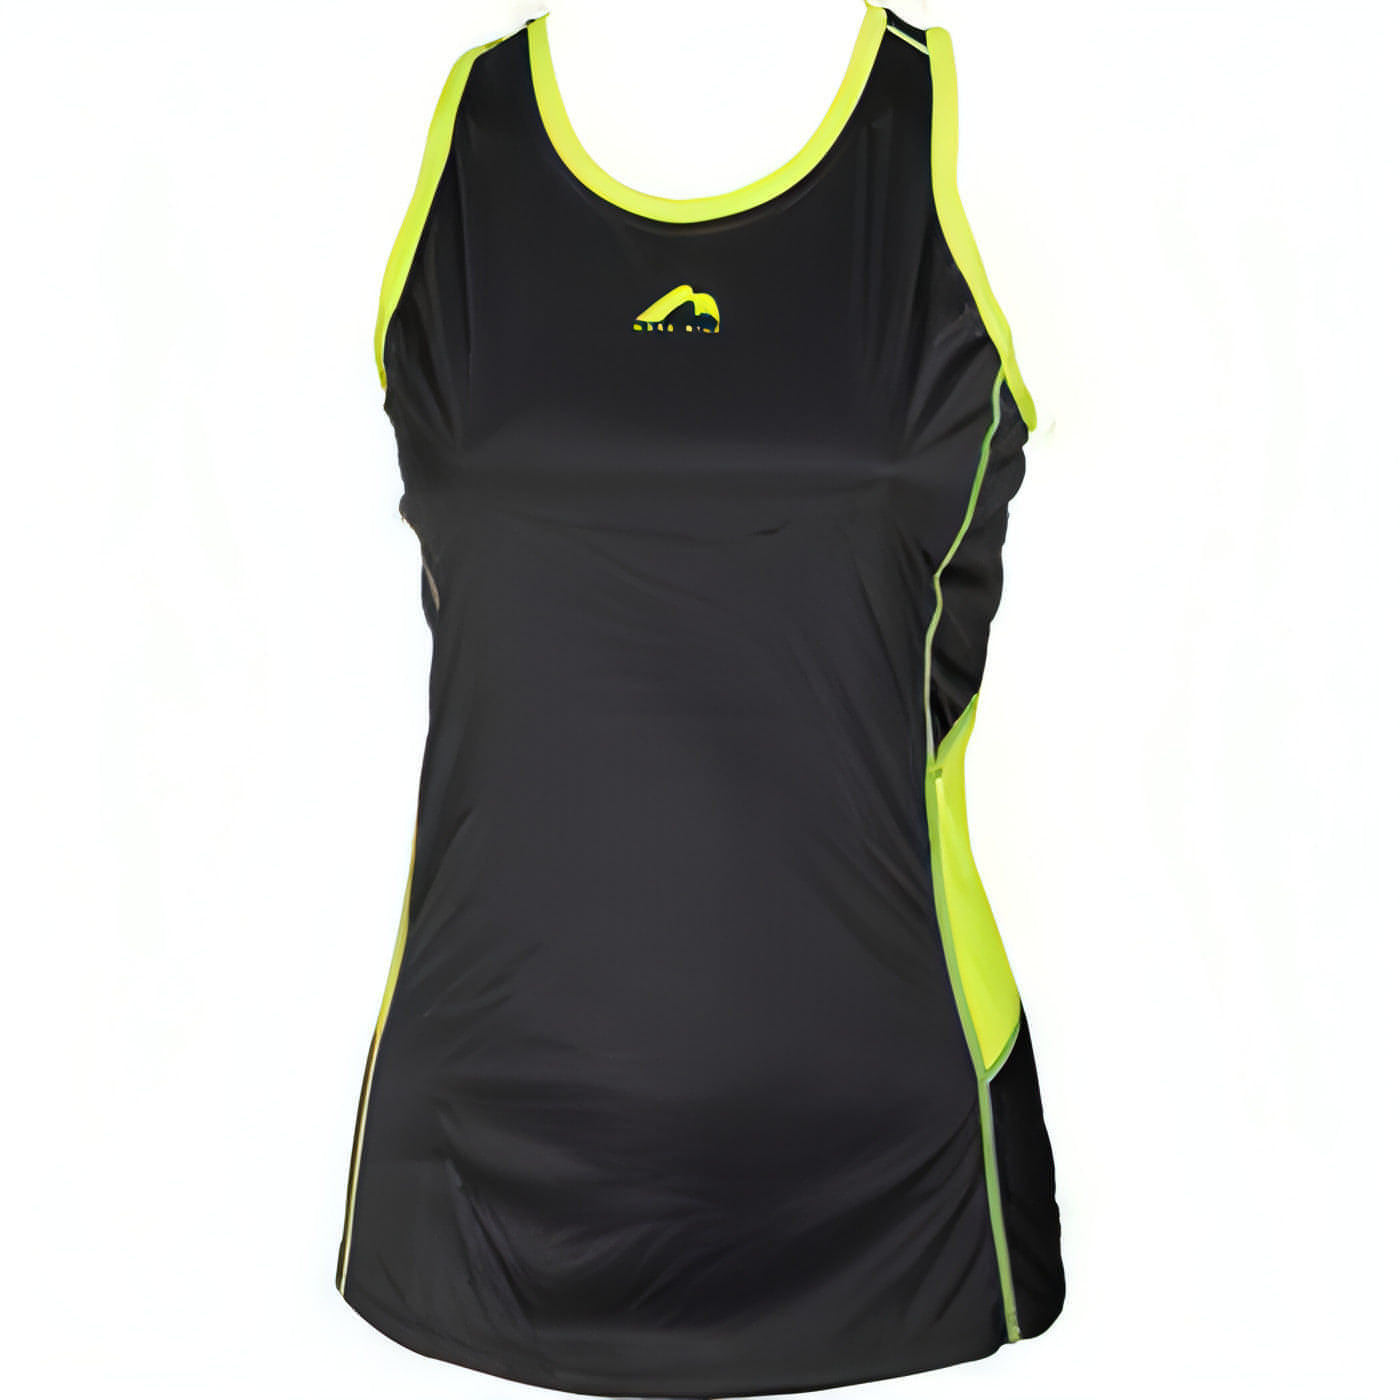 More Mile Racer Back Womens Running Vest - Black 5055604325610 - Start Fitness